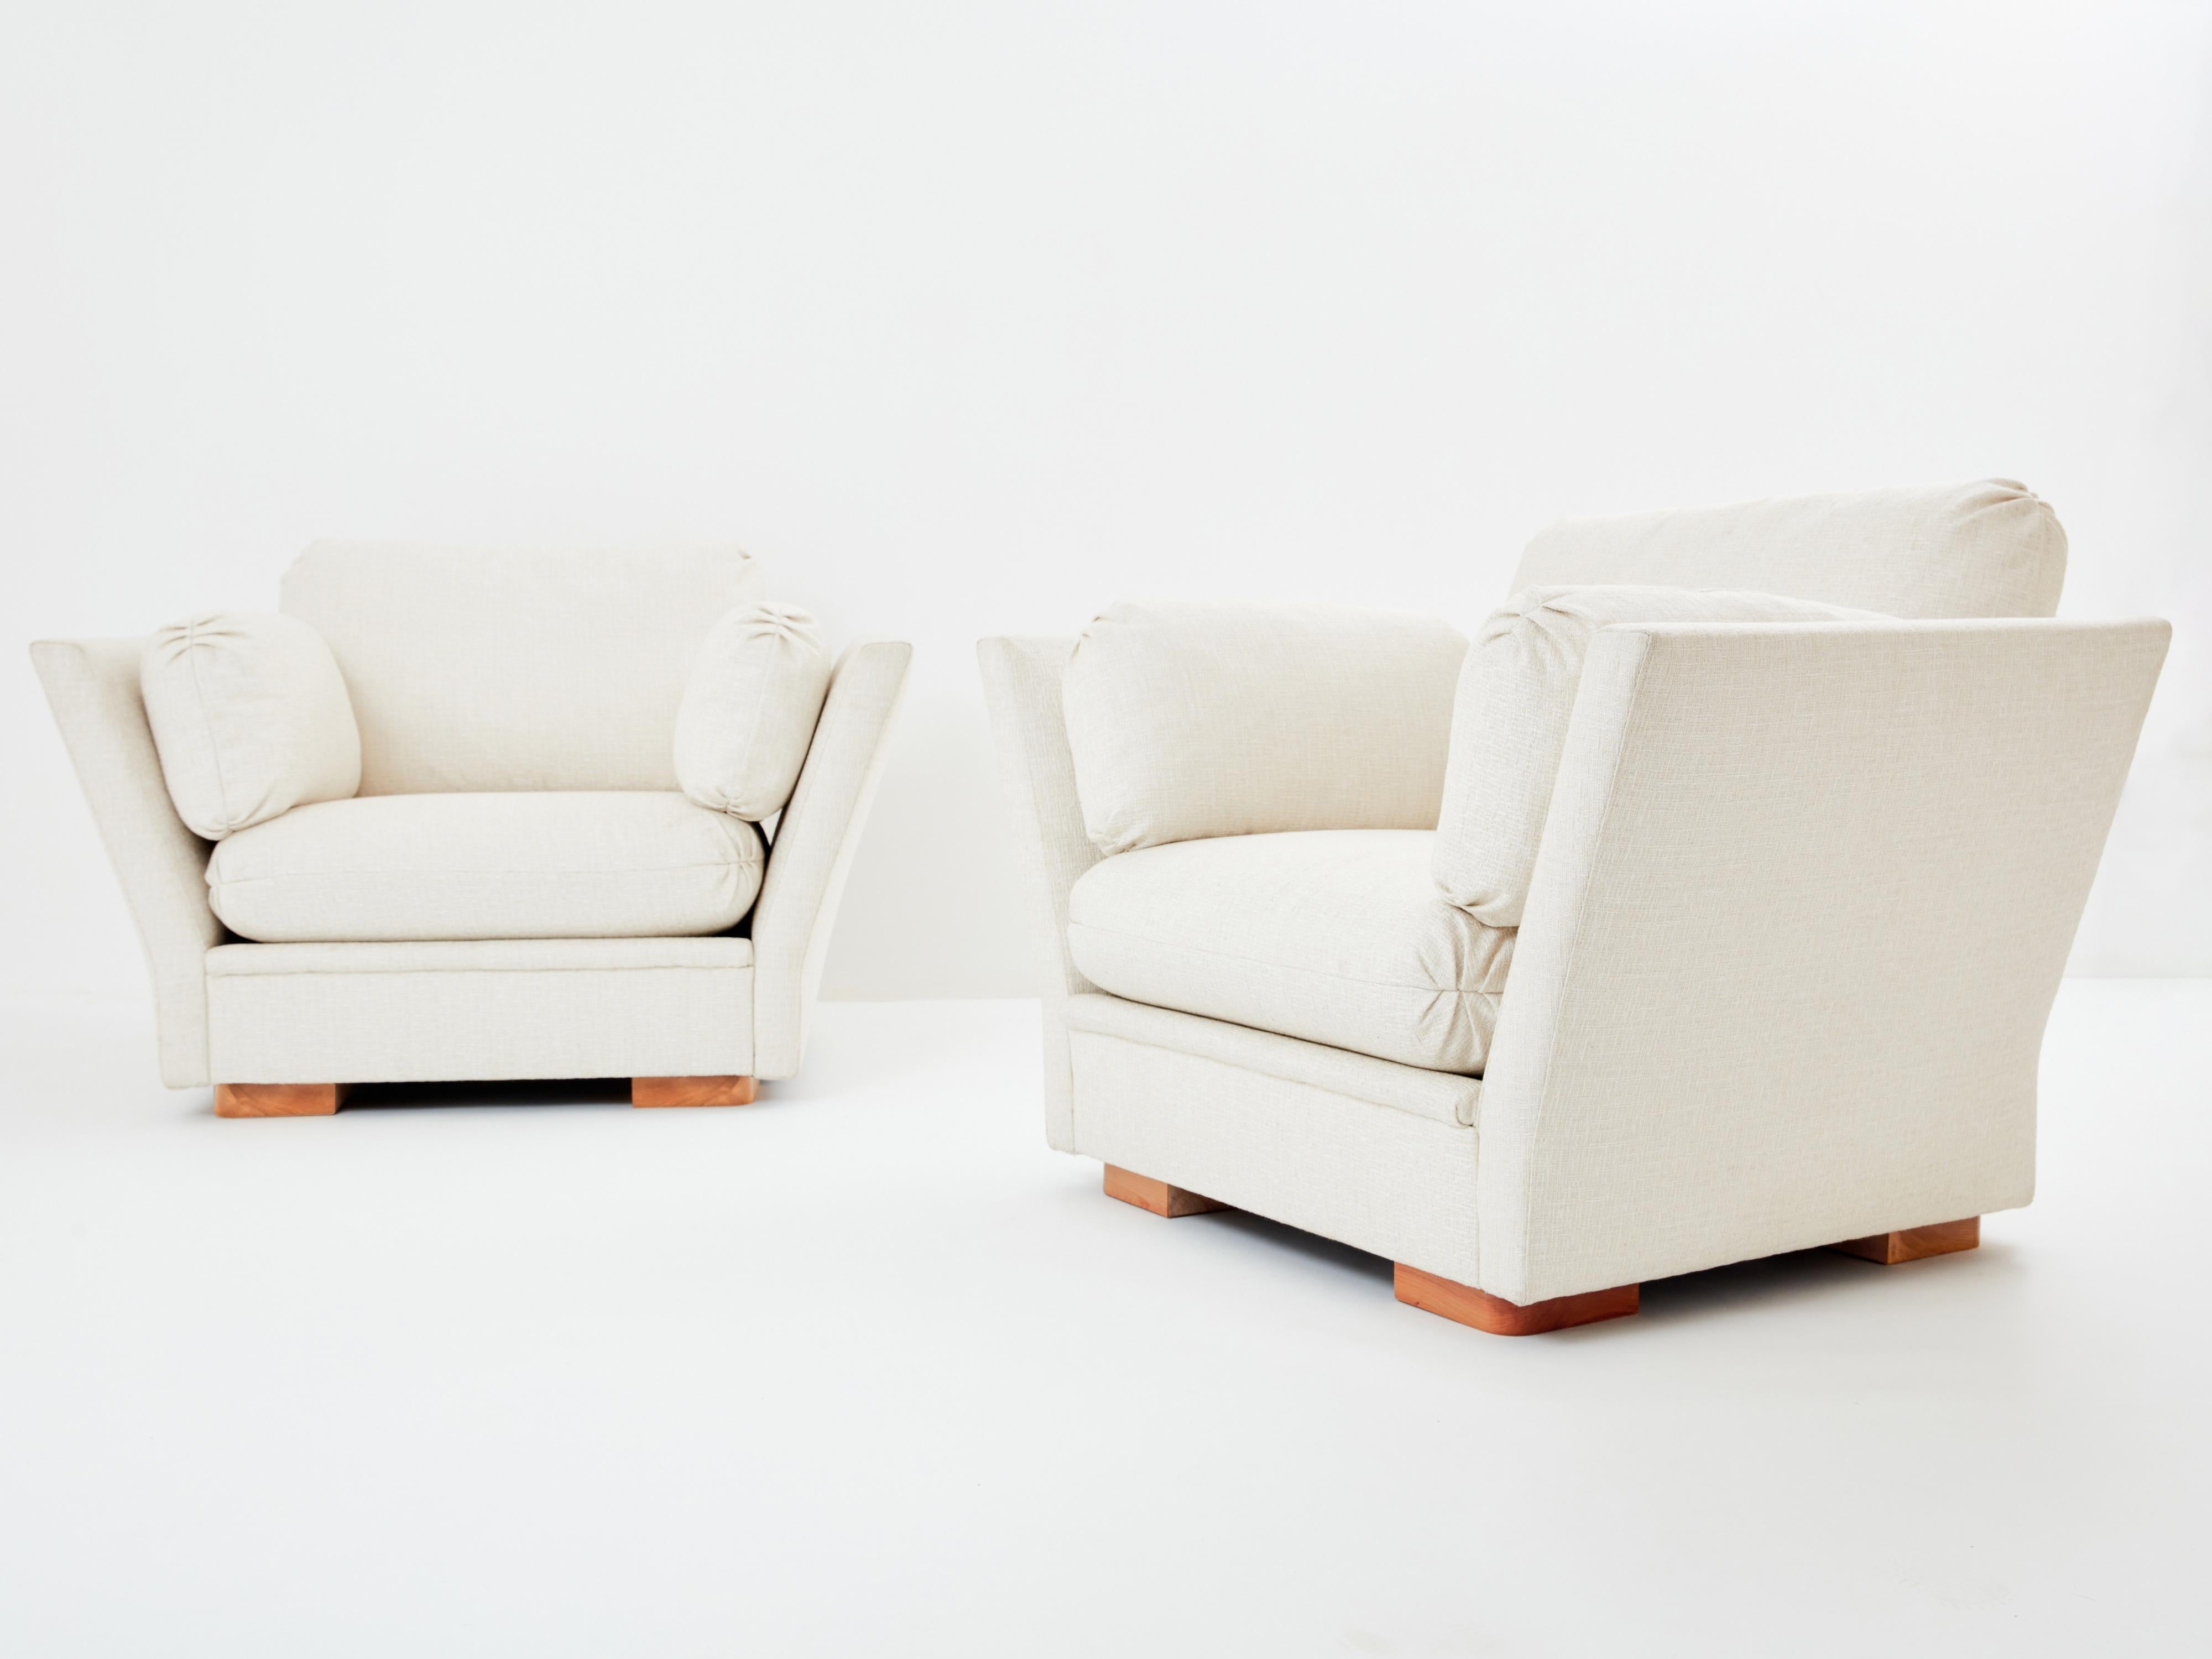 Neu gepolstert in einem beruhigenden, strukturierten, cremefarbenen Stoff von Pierre Frey, ist dieses schöne Sesselpaar ein perfektes Beispiel für den Neoklassizismus von Maison Jansen aus den 1960er und 1970er Jahren. Mit ihren großen Armlehnen,